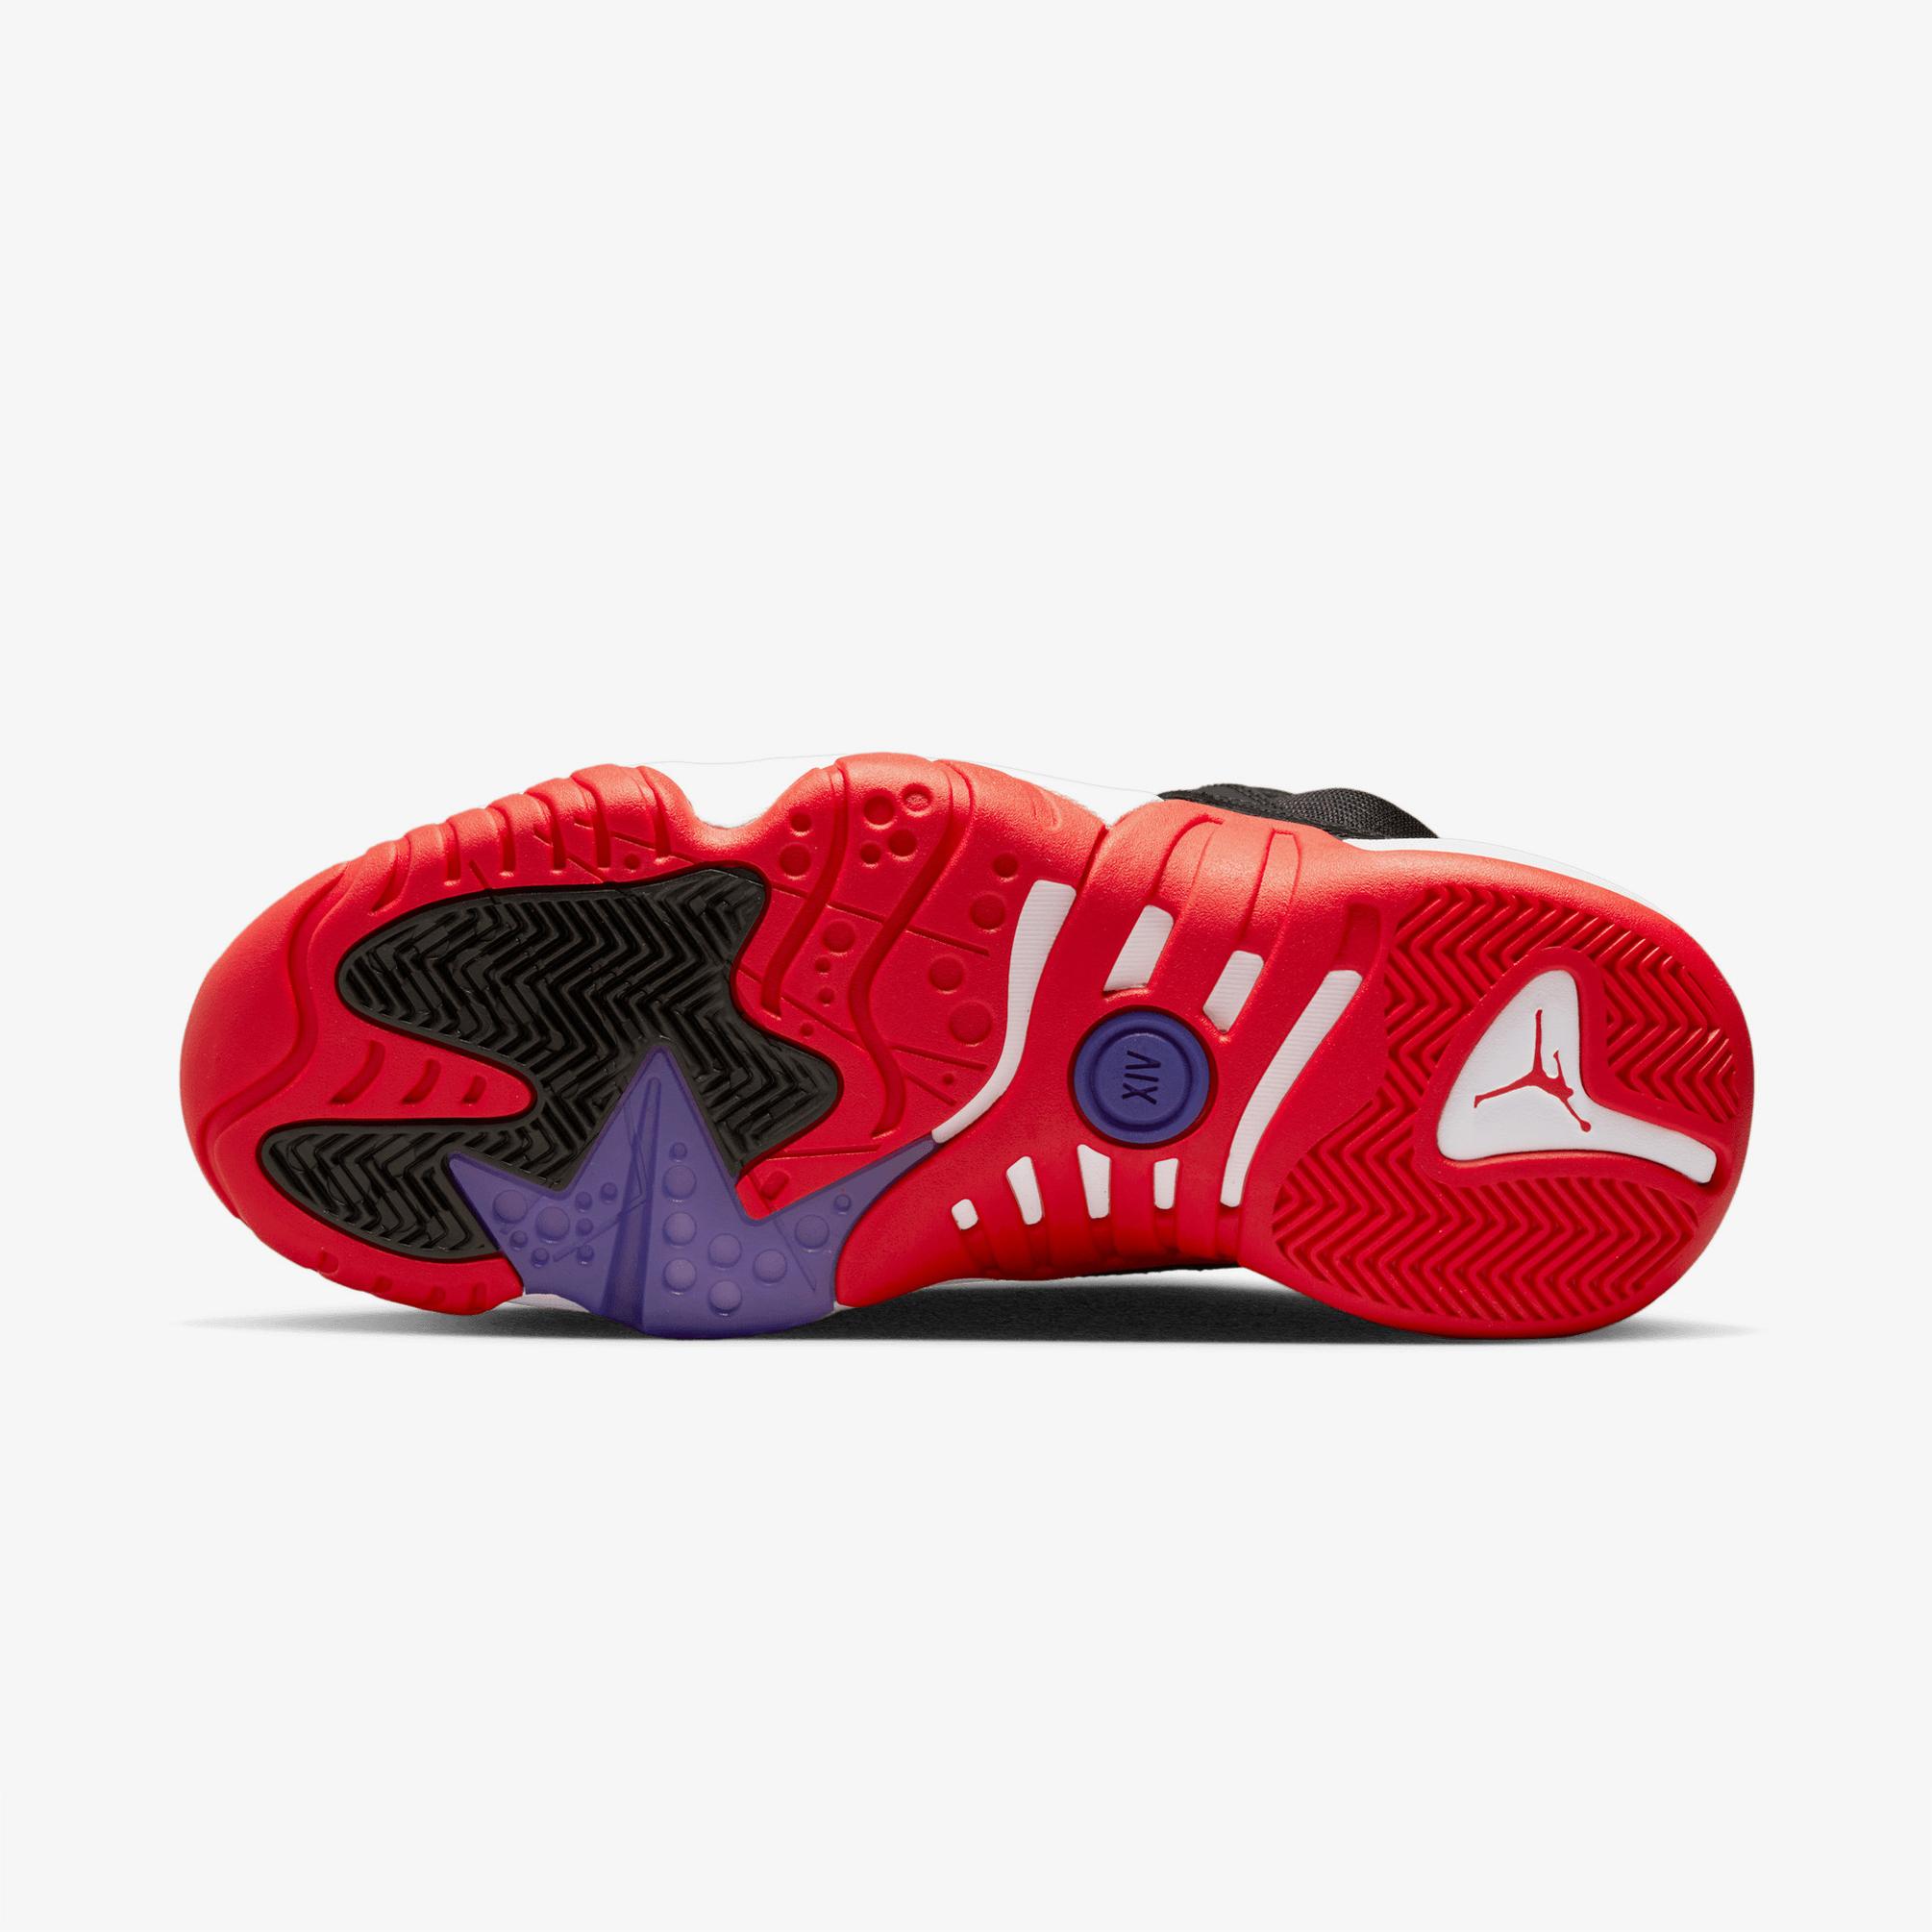  Jordan Jumpman Two Trey Erkek Siyah/Kırmızı Spor Ayakkabı